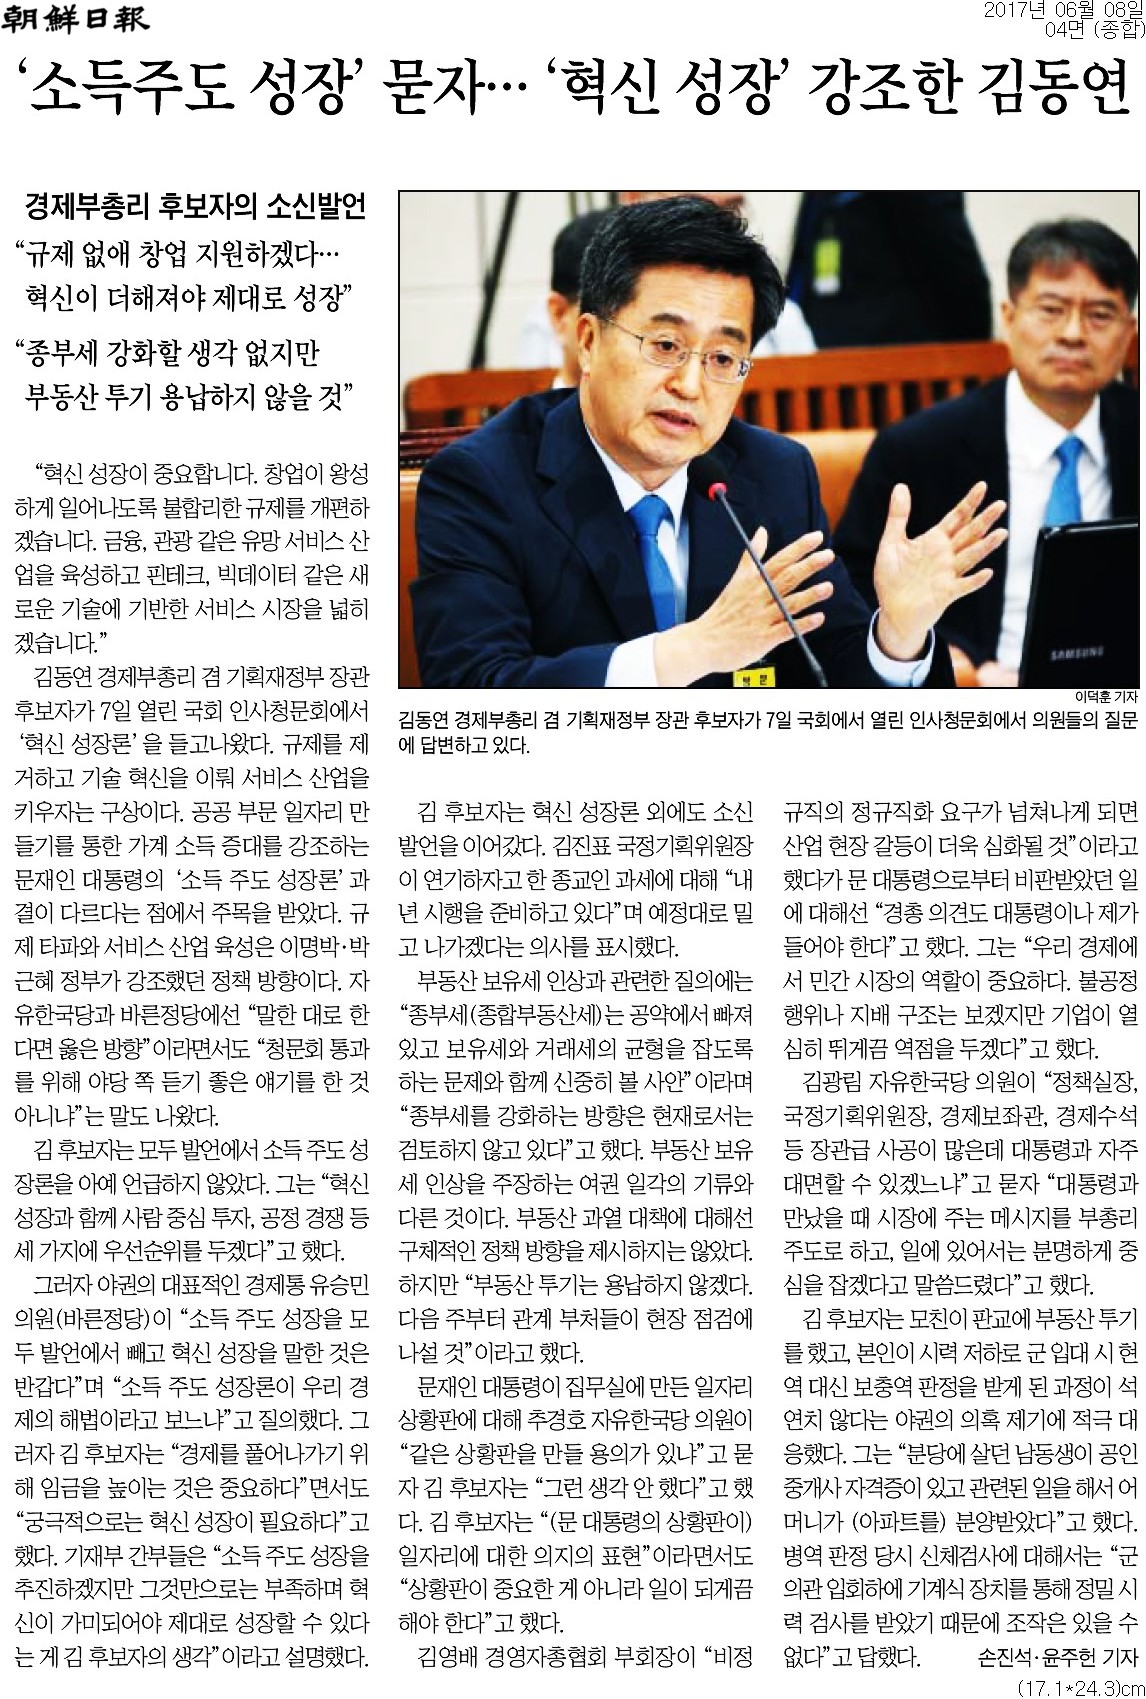 ▲ 조선일보 4면 기사